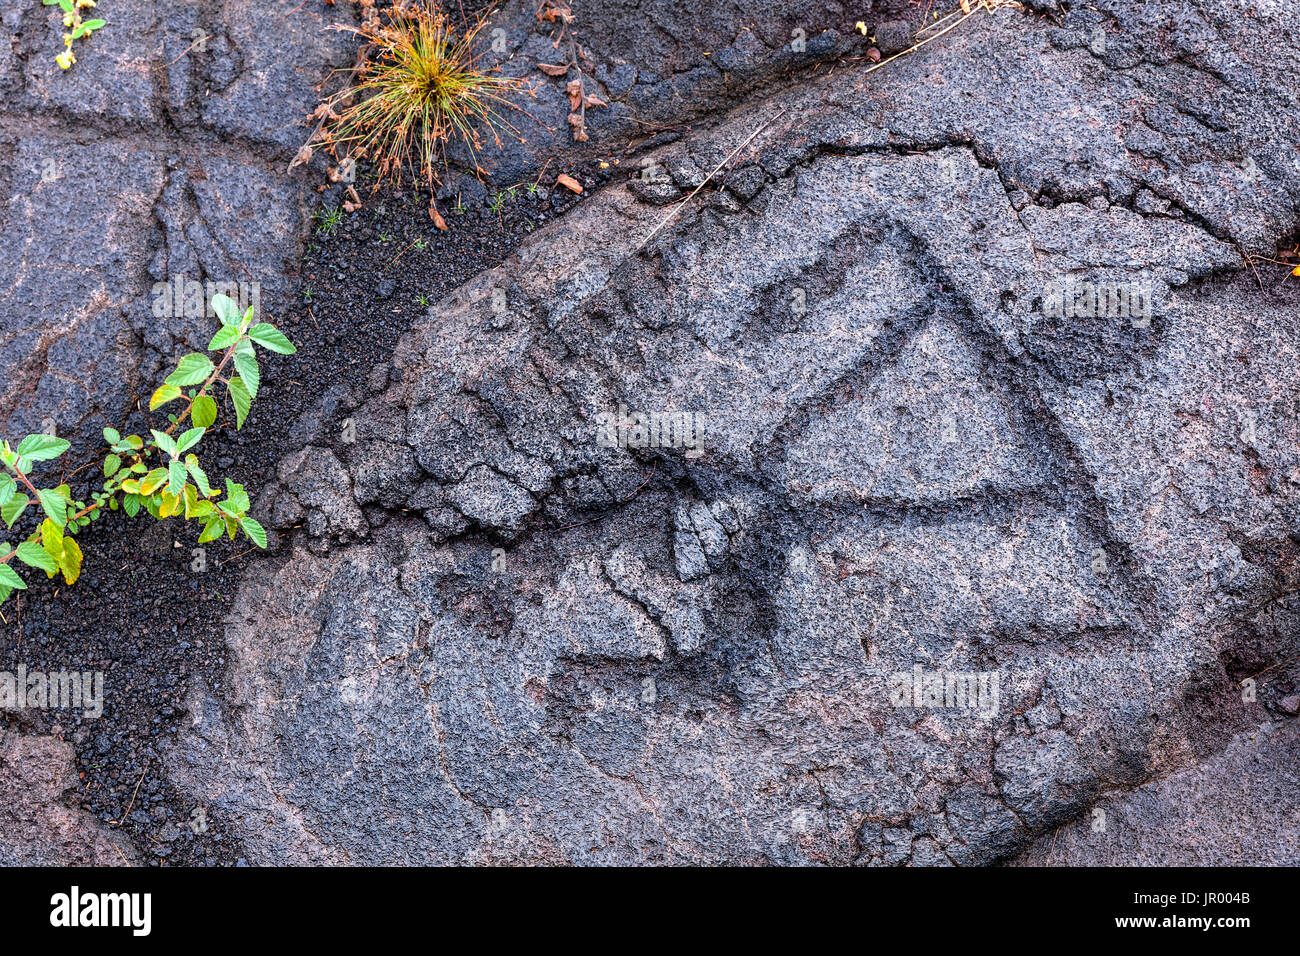 HI00260-00...Hawai'i - Pu'u Loa Petroglyphs le long de la chaîne de cratères Road à Hawai'i Volcanoes National Park sur l'île d'Hawai'i. Banque D'Images